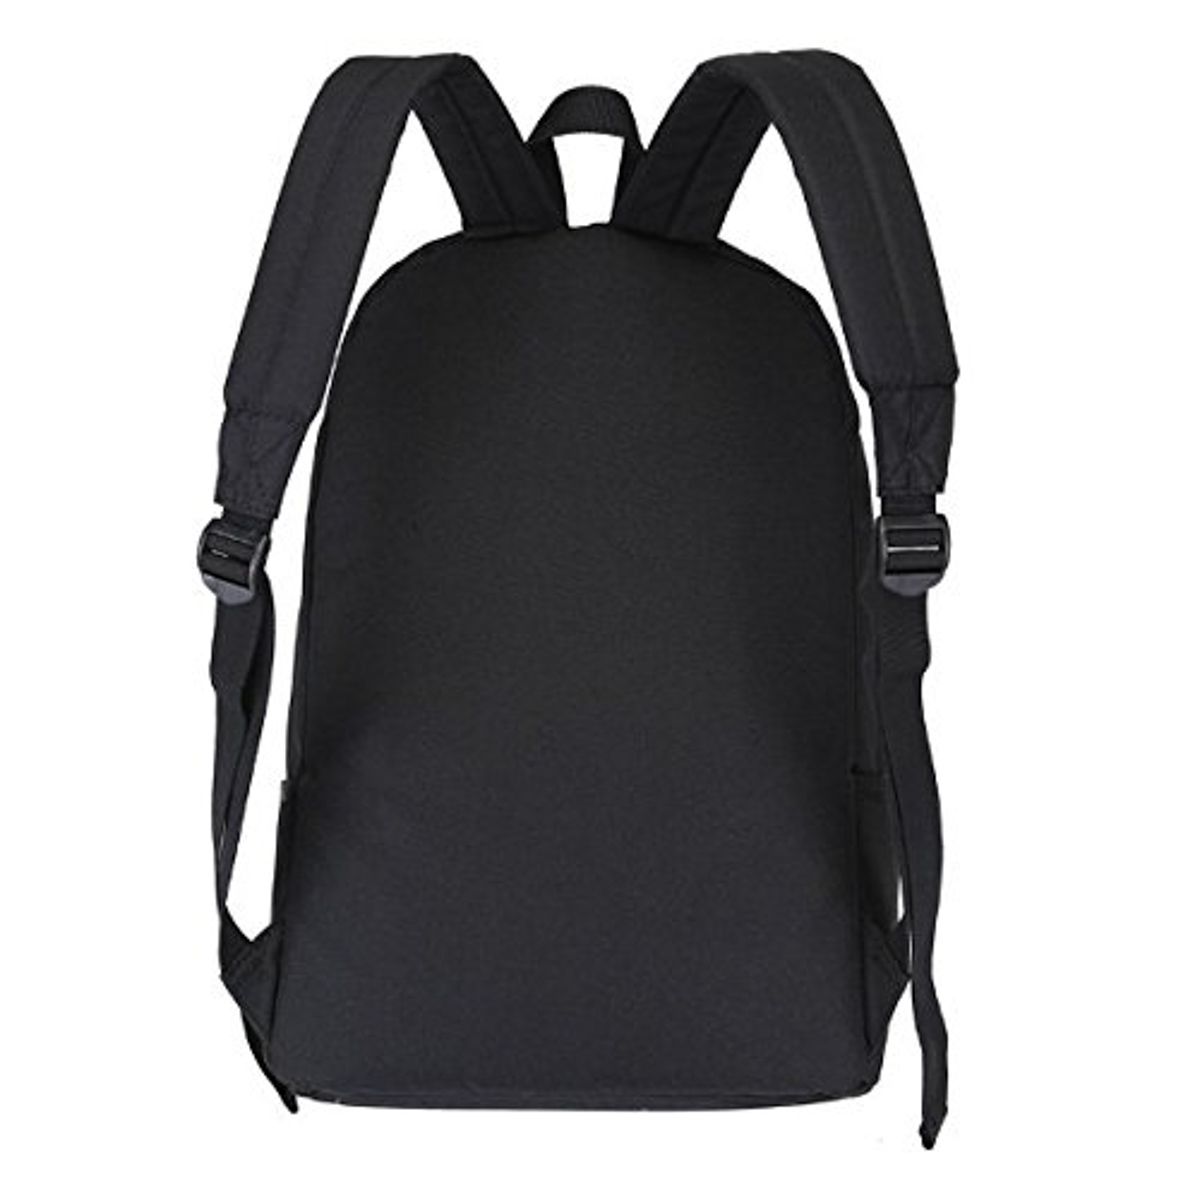 LeeRooy BLACK Plain Strip Backpack - Buy LeeRooy BLACK Plain Strip ...